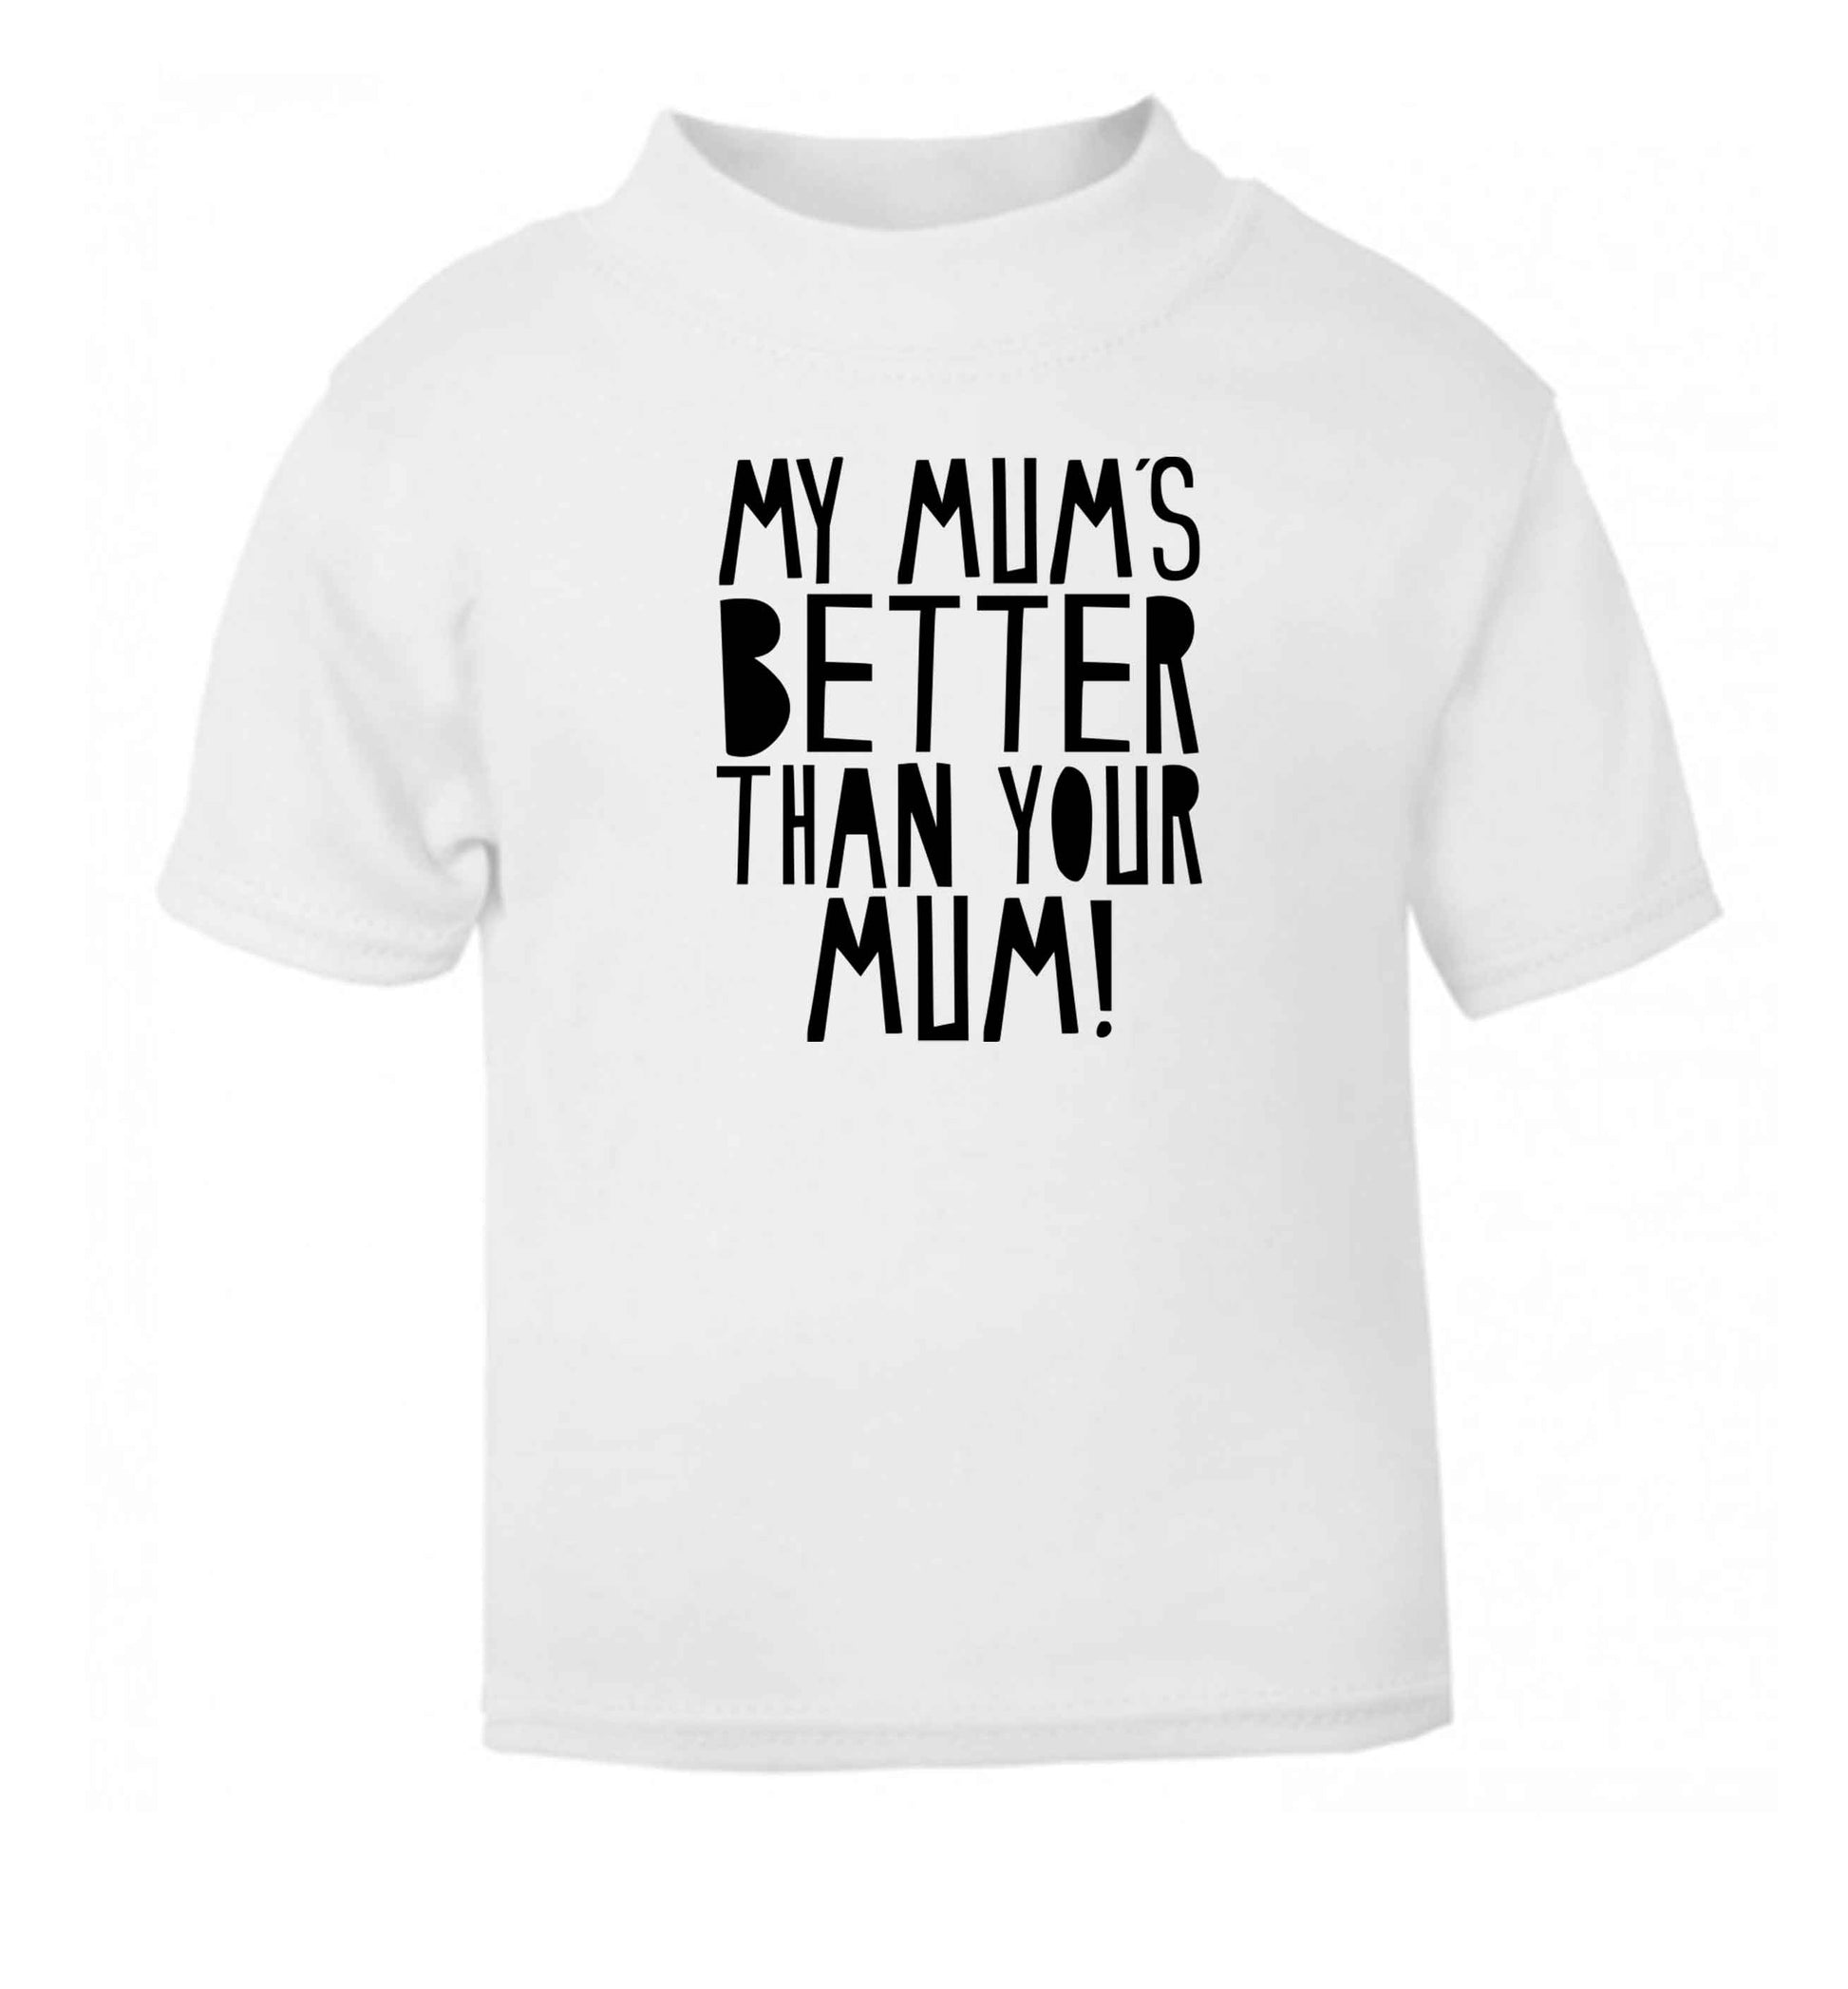 My mum's better than your mum white baby toddler Tshirt 2 Years